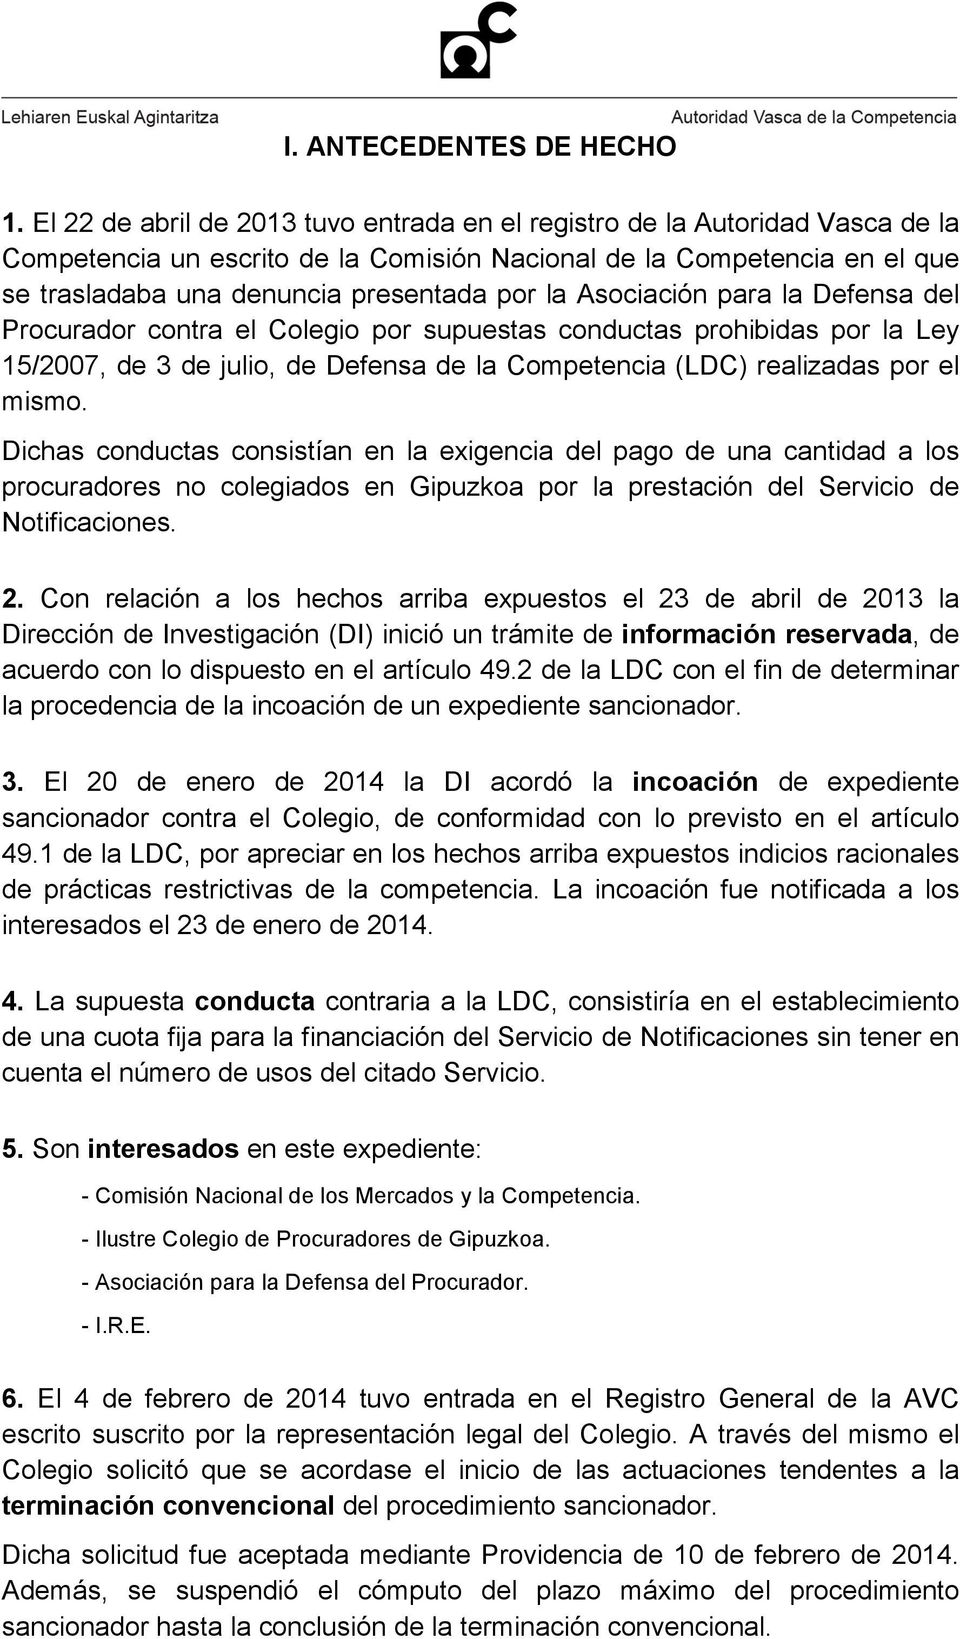 Asociación para la Defensa del Procurador contra el Colegio por supuestas conductas prohibidas por la Ley 15/2007, de 3 de julio, de Defensa de la Competencia (LDC) realizadas por el mismo.